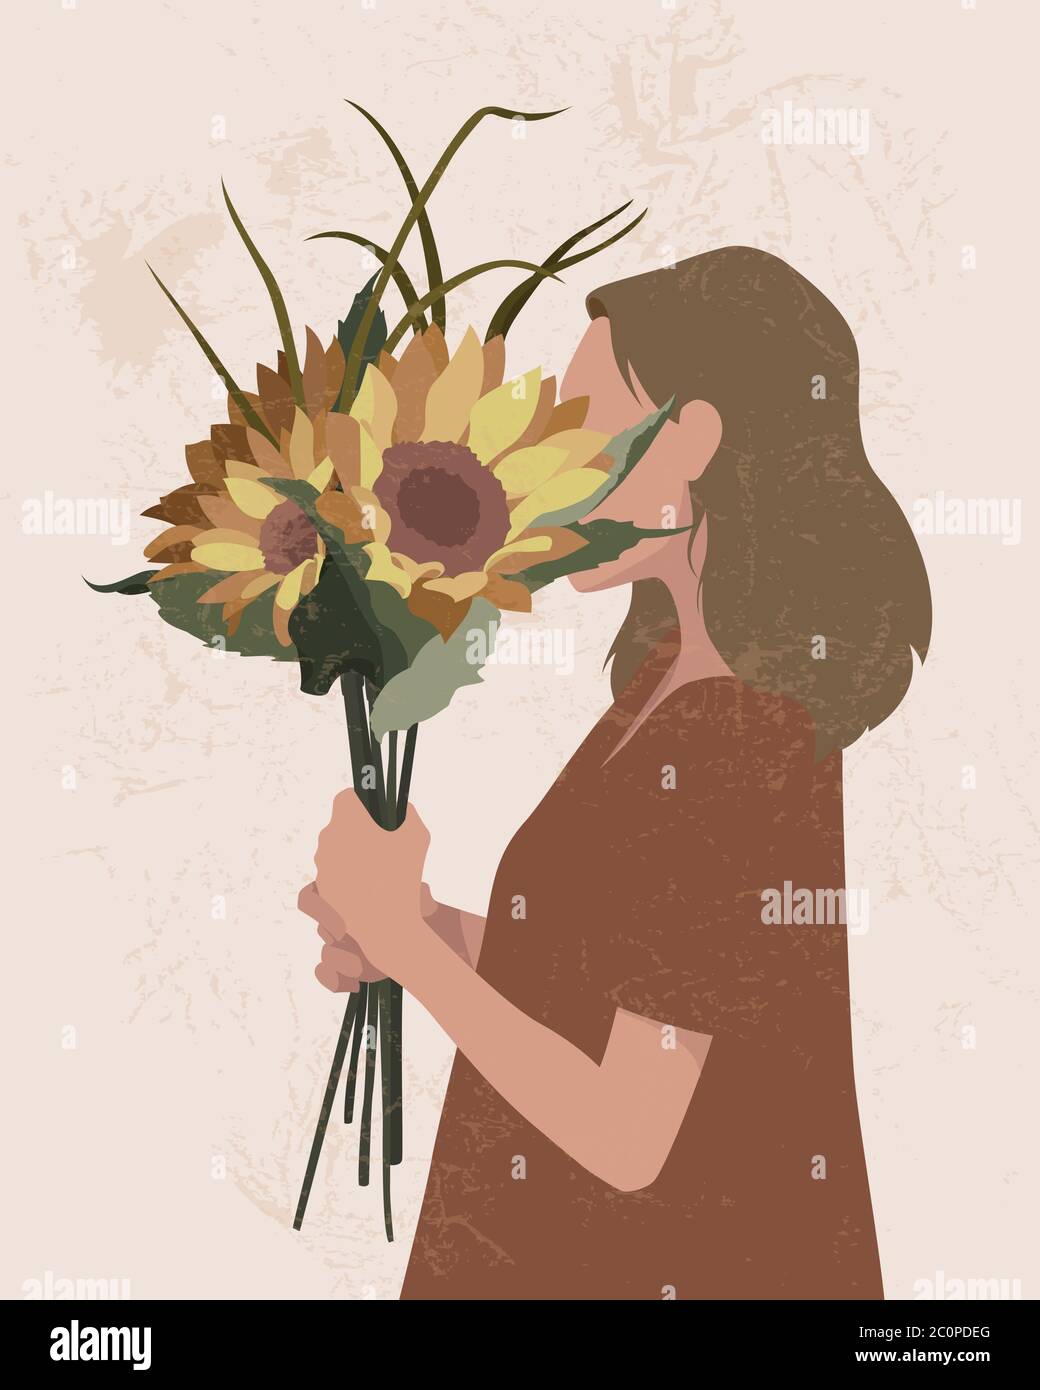 Junges Mädchen mit Sonnenblumen bedeckt ihr Gesicht. Vektor-Illustration einer Dame mit floralen Elementen. Stock Vektor